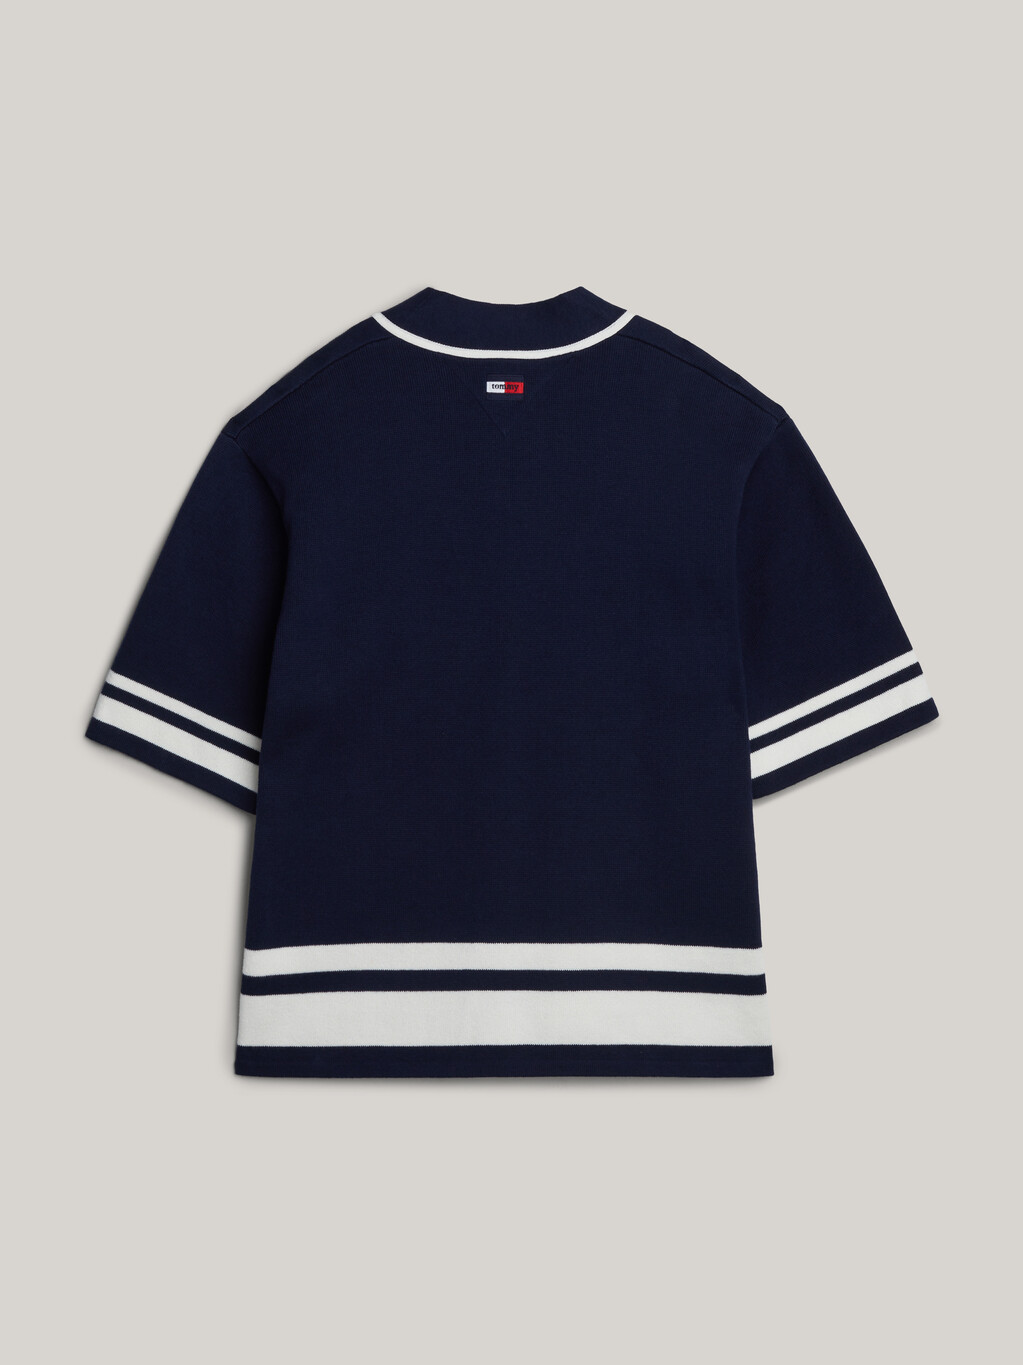 Dual Gender Logo Knit Baseball Shirt, Empire Navy, hi-res